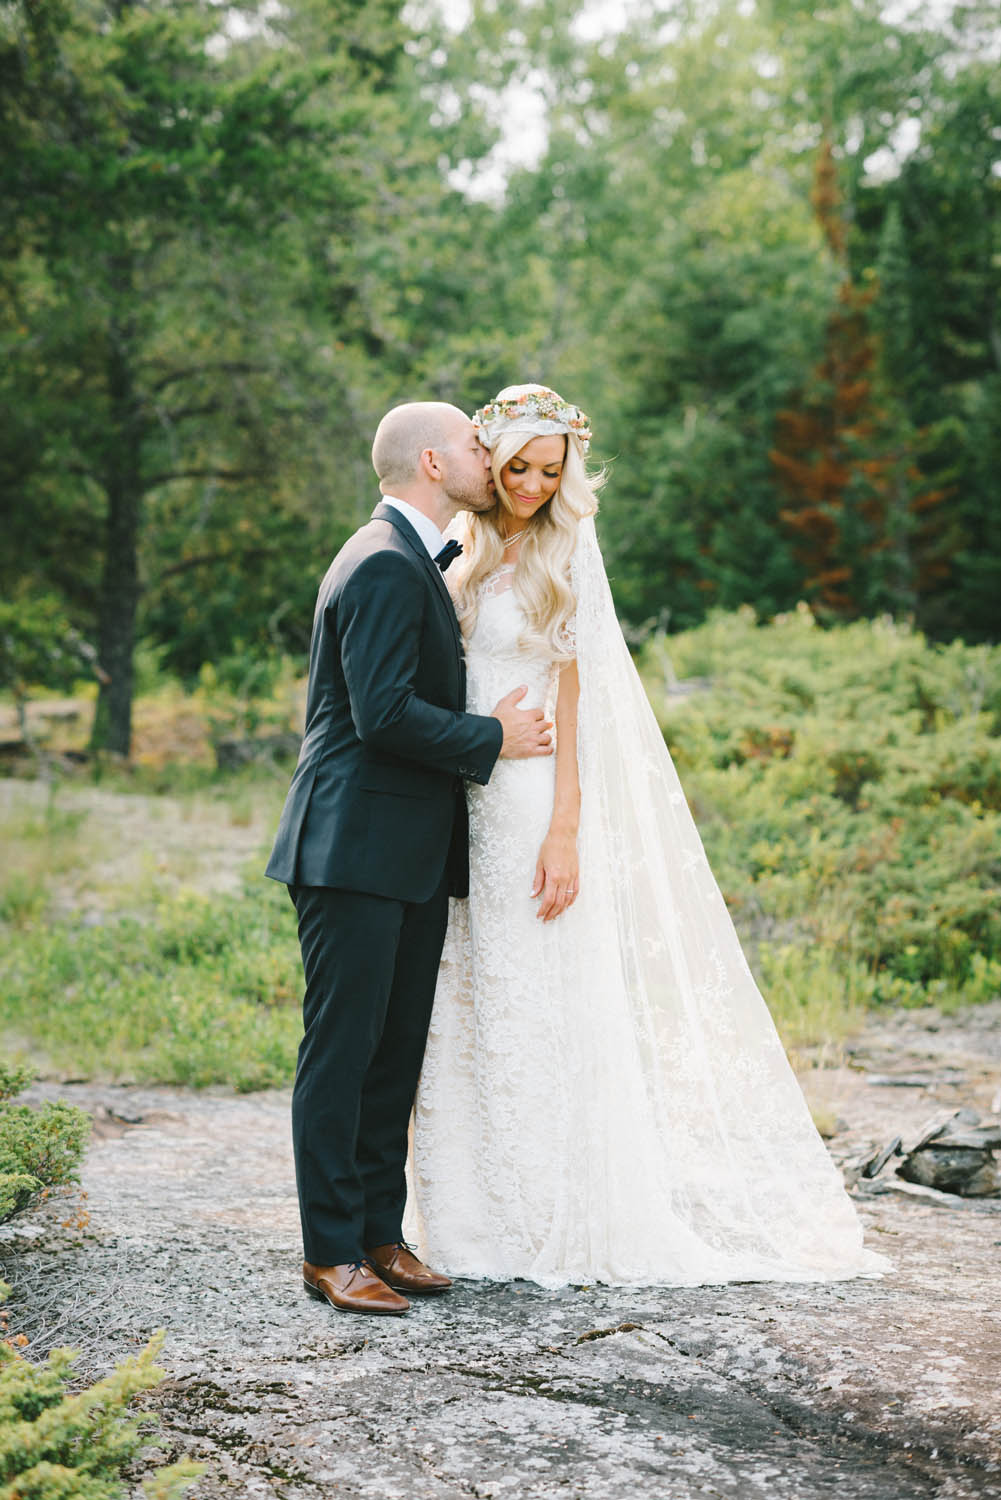 Alysha + Jacob Kampphotography Winnipeg Wedding Photographers 